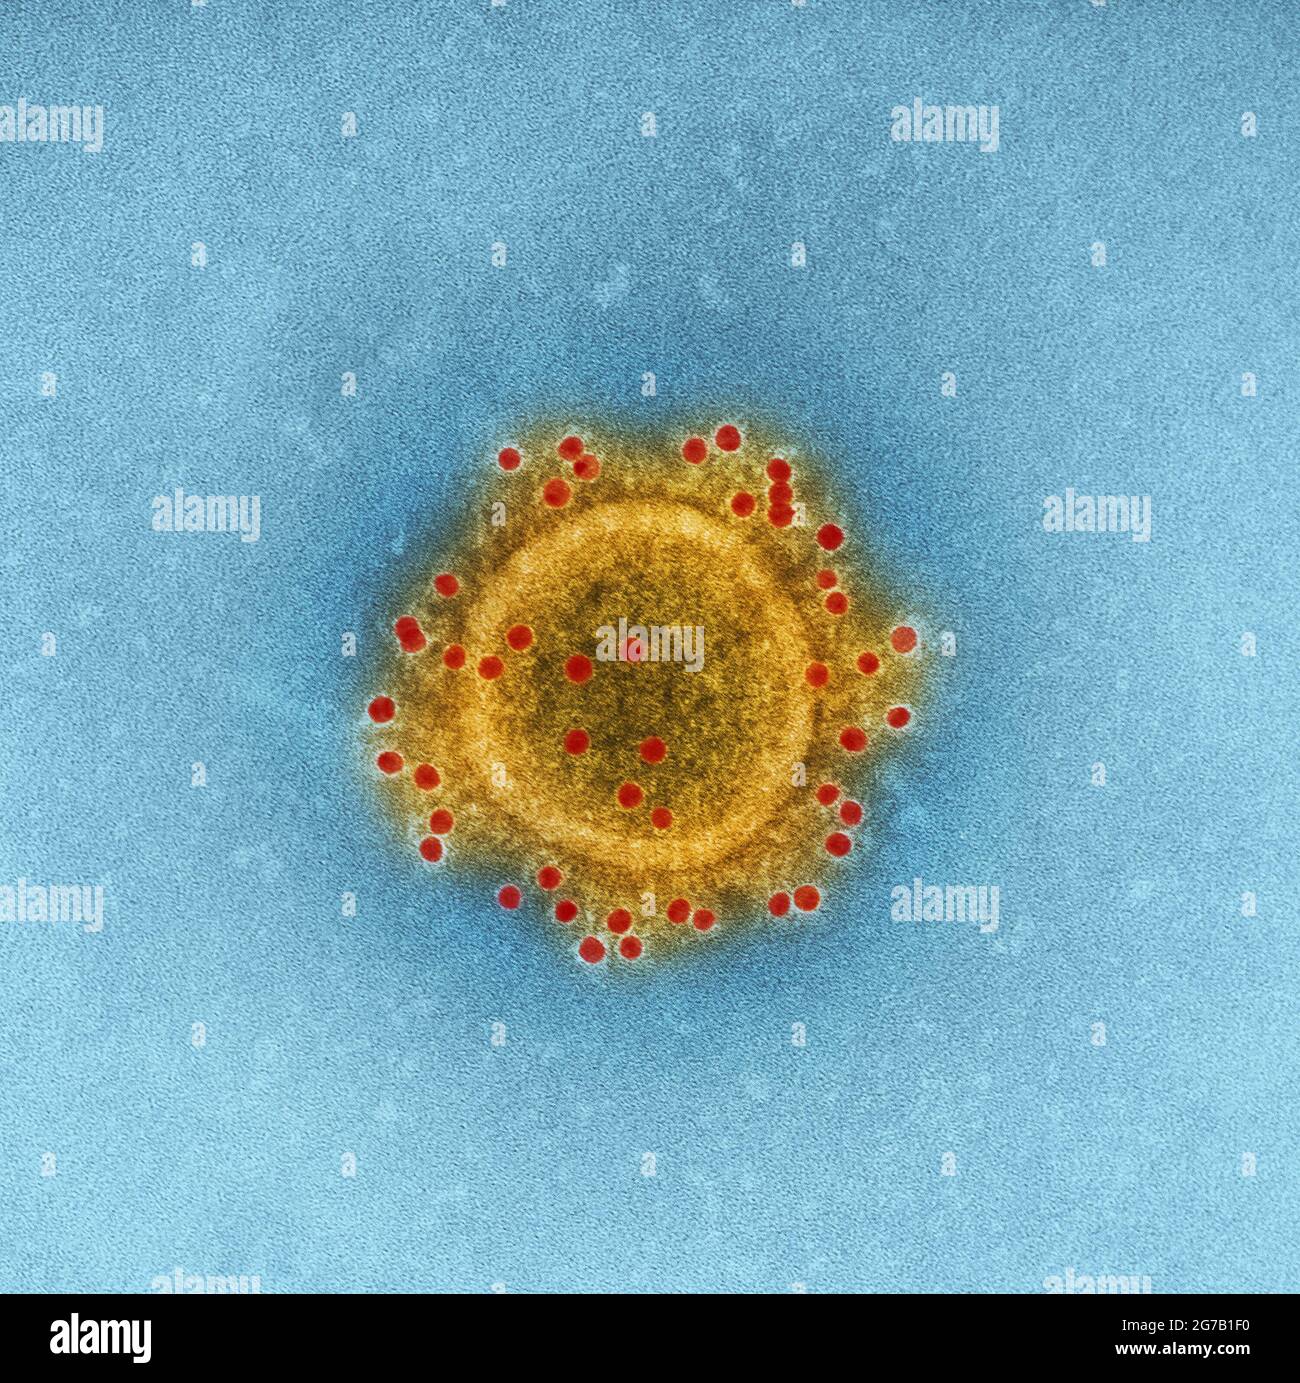 Imagen del virión 'coronavirus del síndrome respiratorio de Oriente Medio' (MERS-CoV) producido por el Instituto Nacional de Alergias y Enfermedades Infecciosas de los Estados Unidos (NIAID), esta imagen de transmisión microscópica de electrones (TEM), altamente ampliada y coloreada digitalmente, resalta la envoltura de partículas de una sola, Virión MERS-CoV en forma esférica Una versión optimizada y mejorada de una imagen producida por el Instituto Nacional de Alergias y Enfermedades Infecciosas de los Estados Unidos / Crédito: NIAID Foto de stock